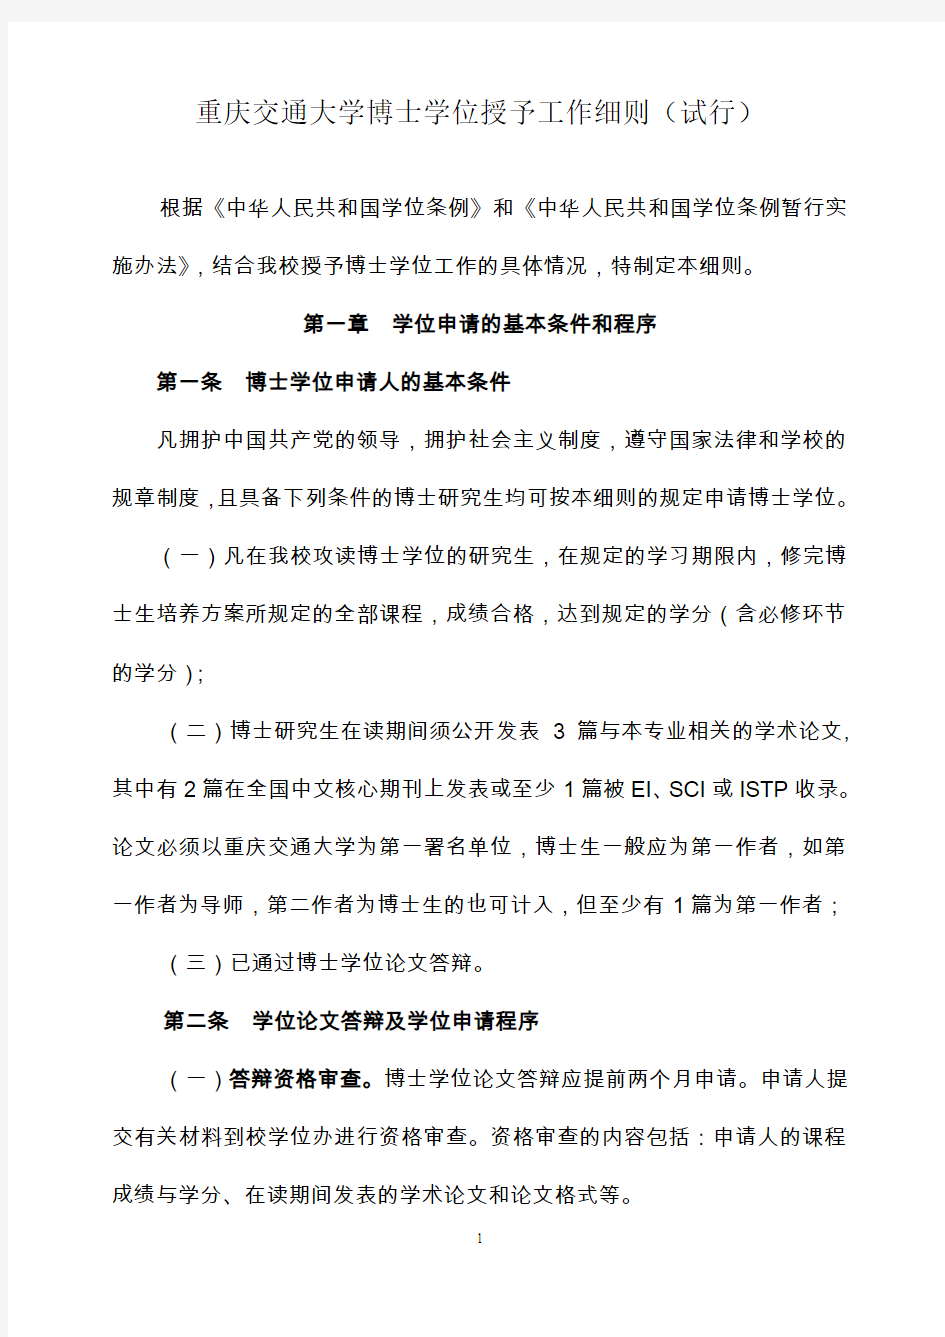 重庆交通学院硕士学位授予工作细则-重庆交通大学